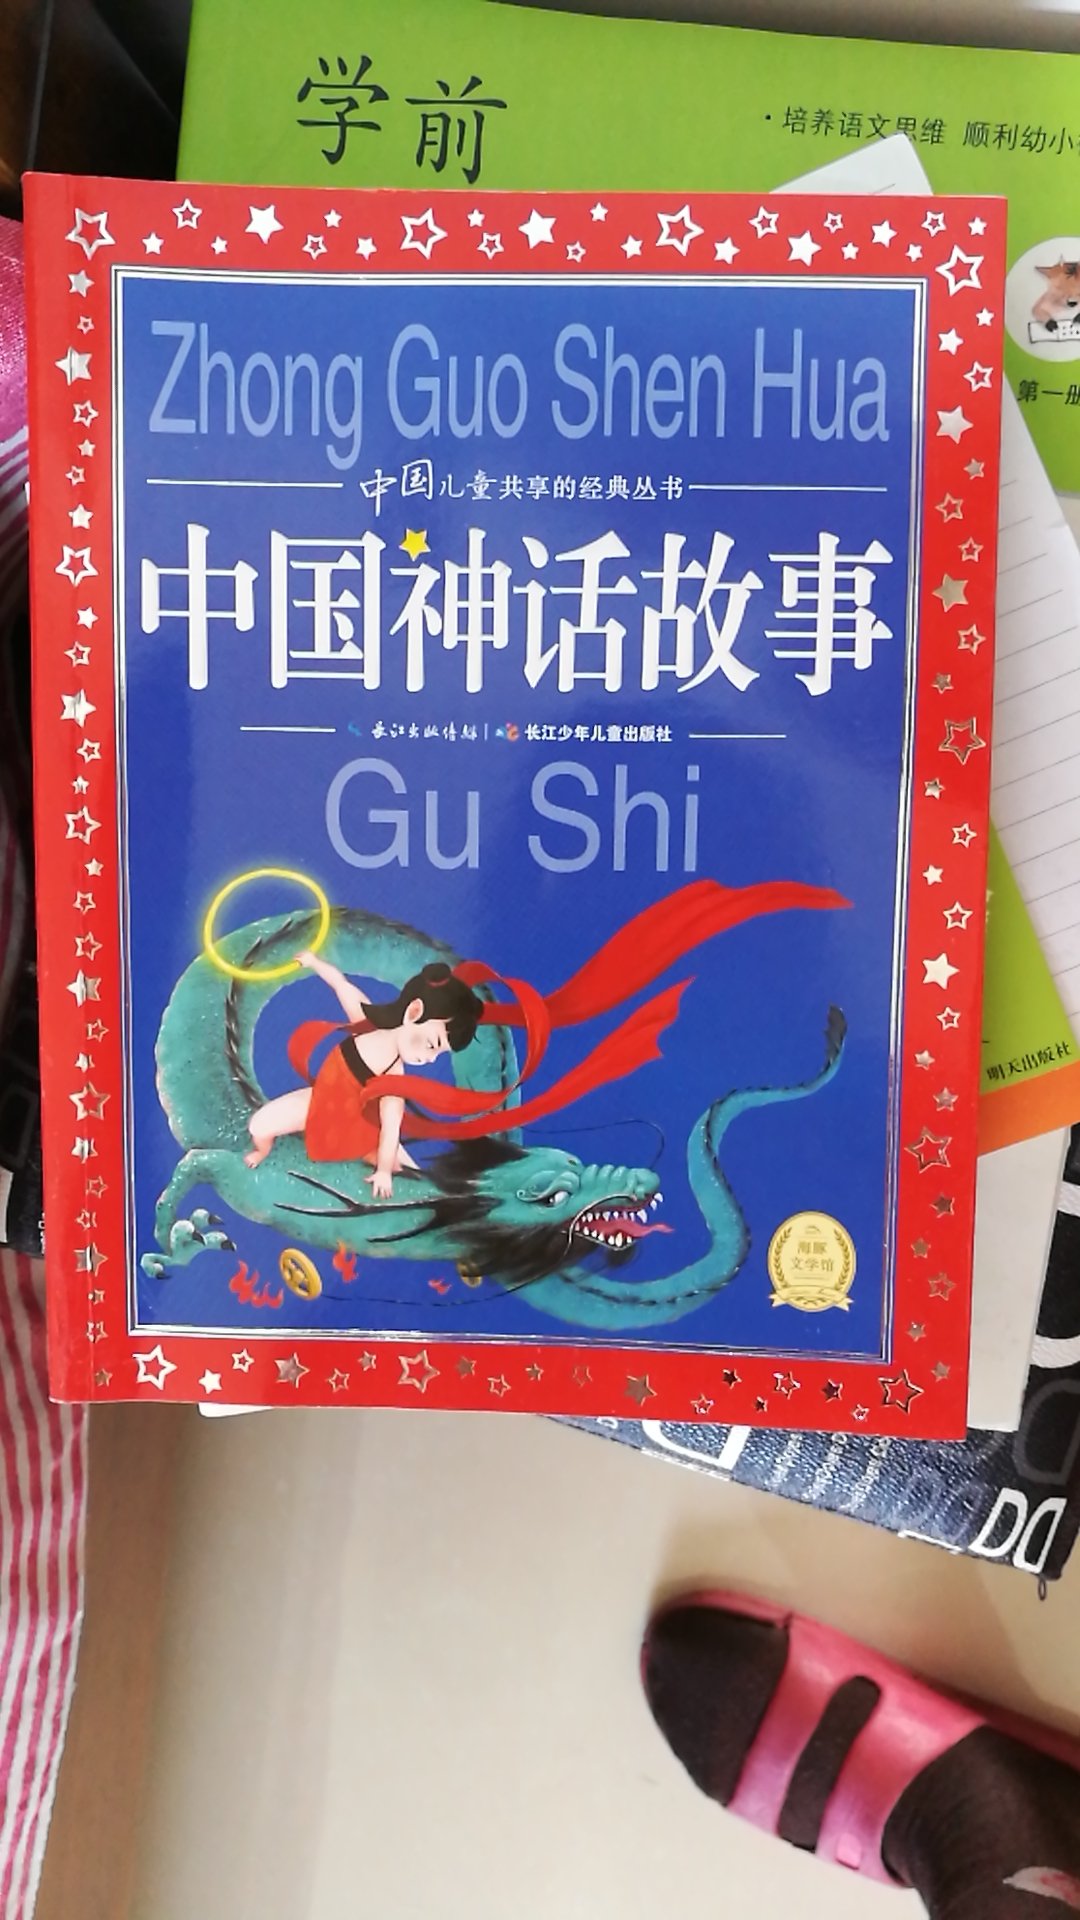 说实话我觉得这个书一般，文字水平比较低，不如我买的那套动画中国